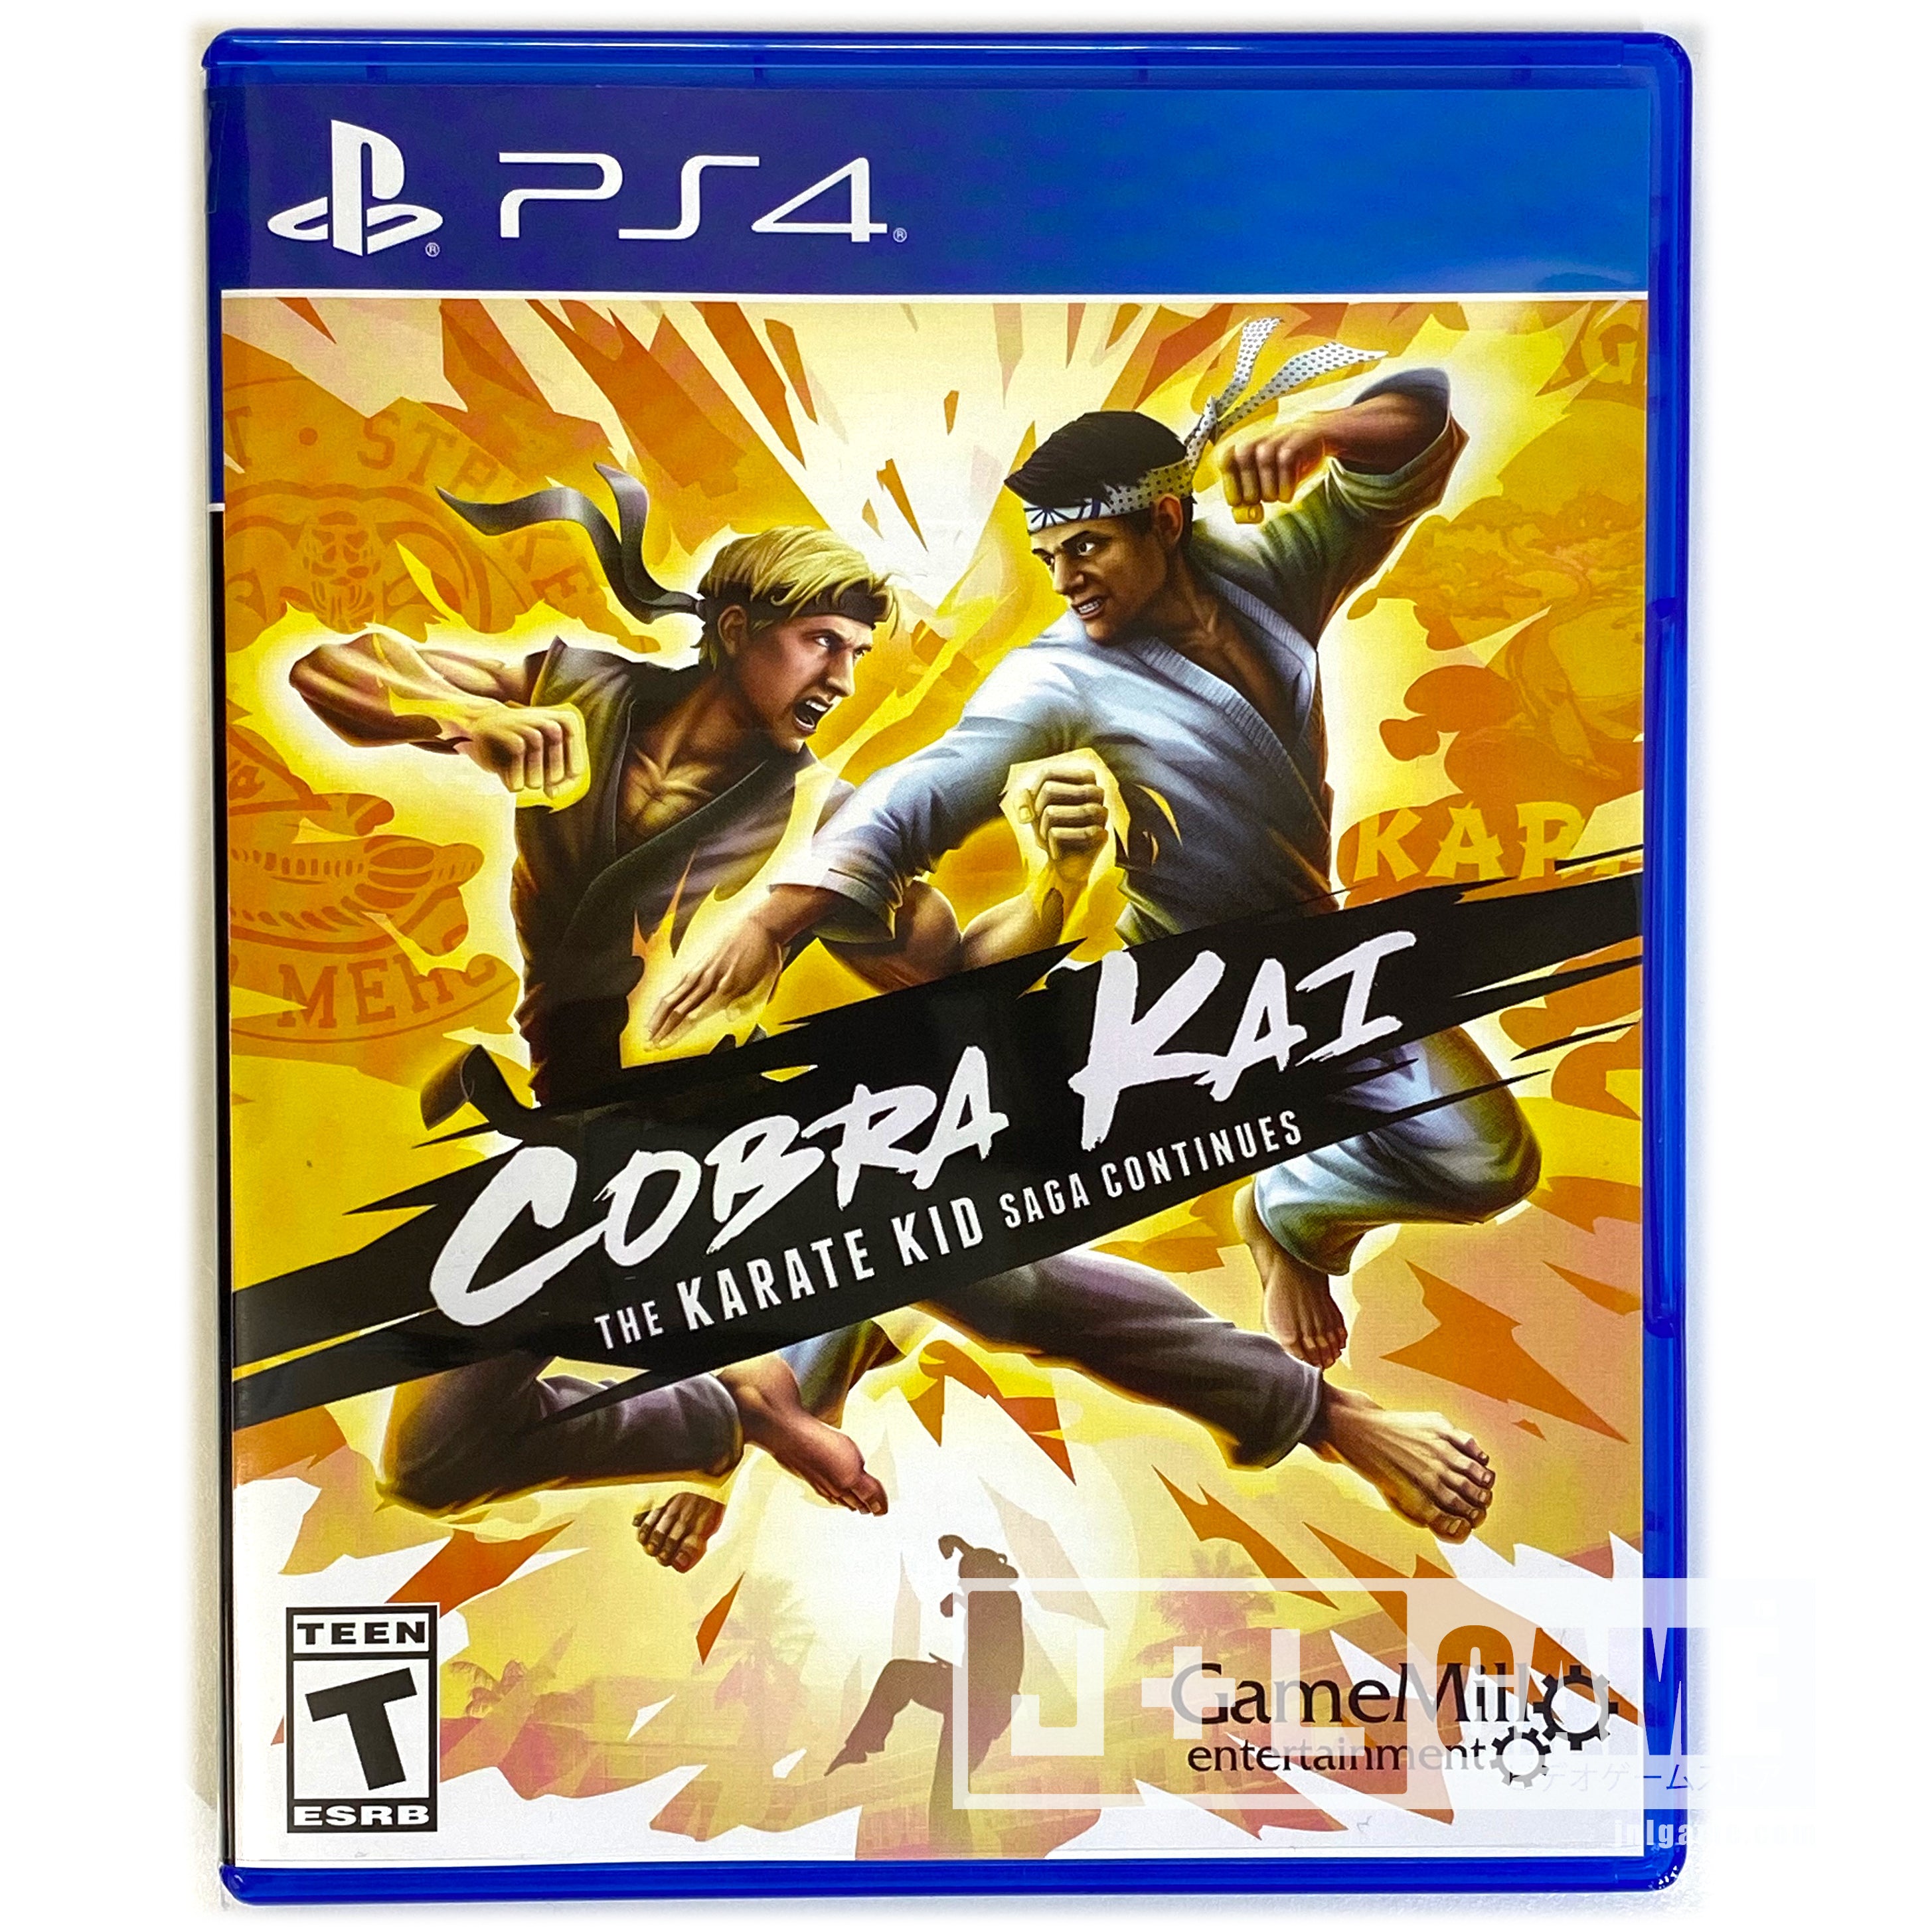 Cobra Kai: Karate Kid Saga - (PS4) PlaySation 4 [UNBOXING] Video Games Game Mill   